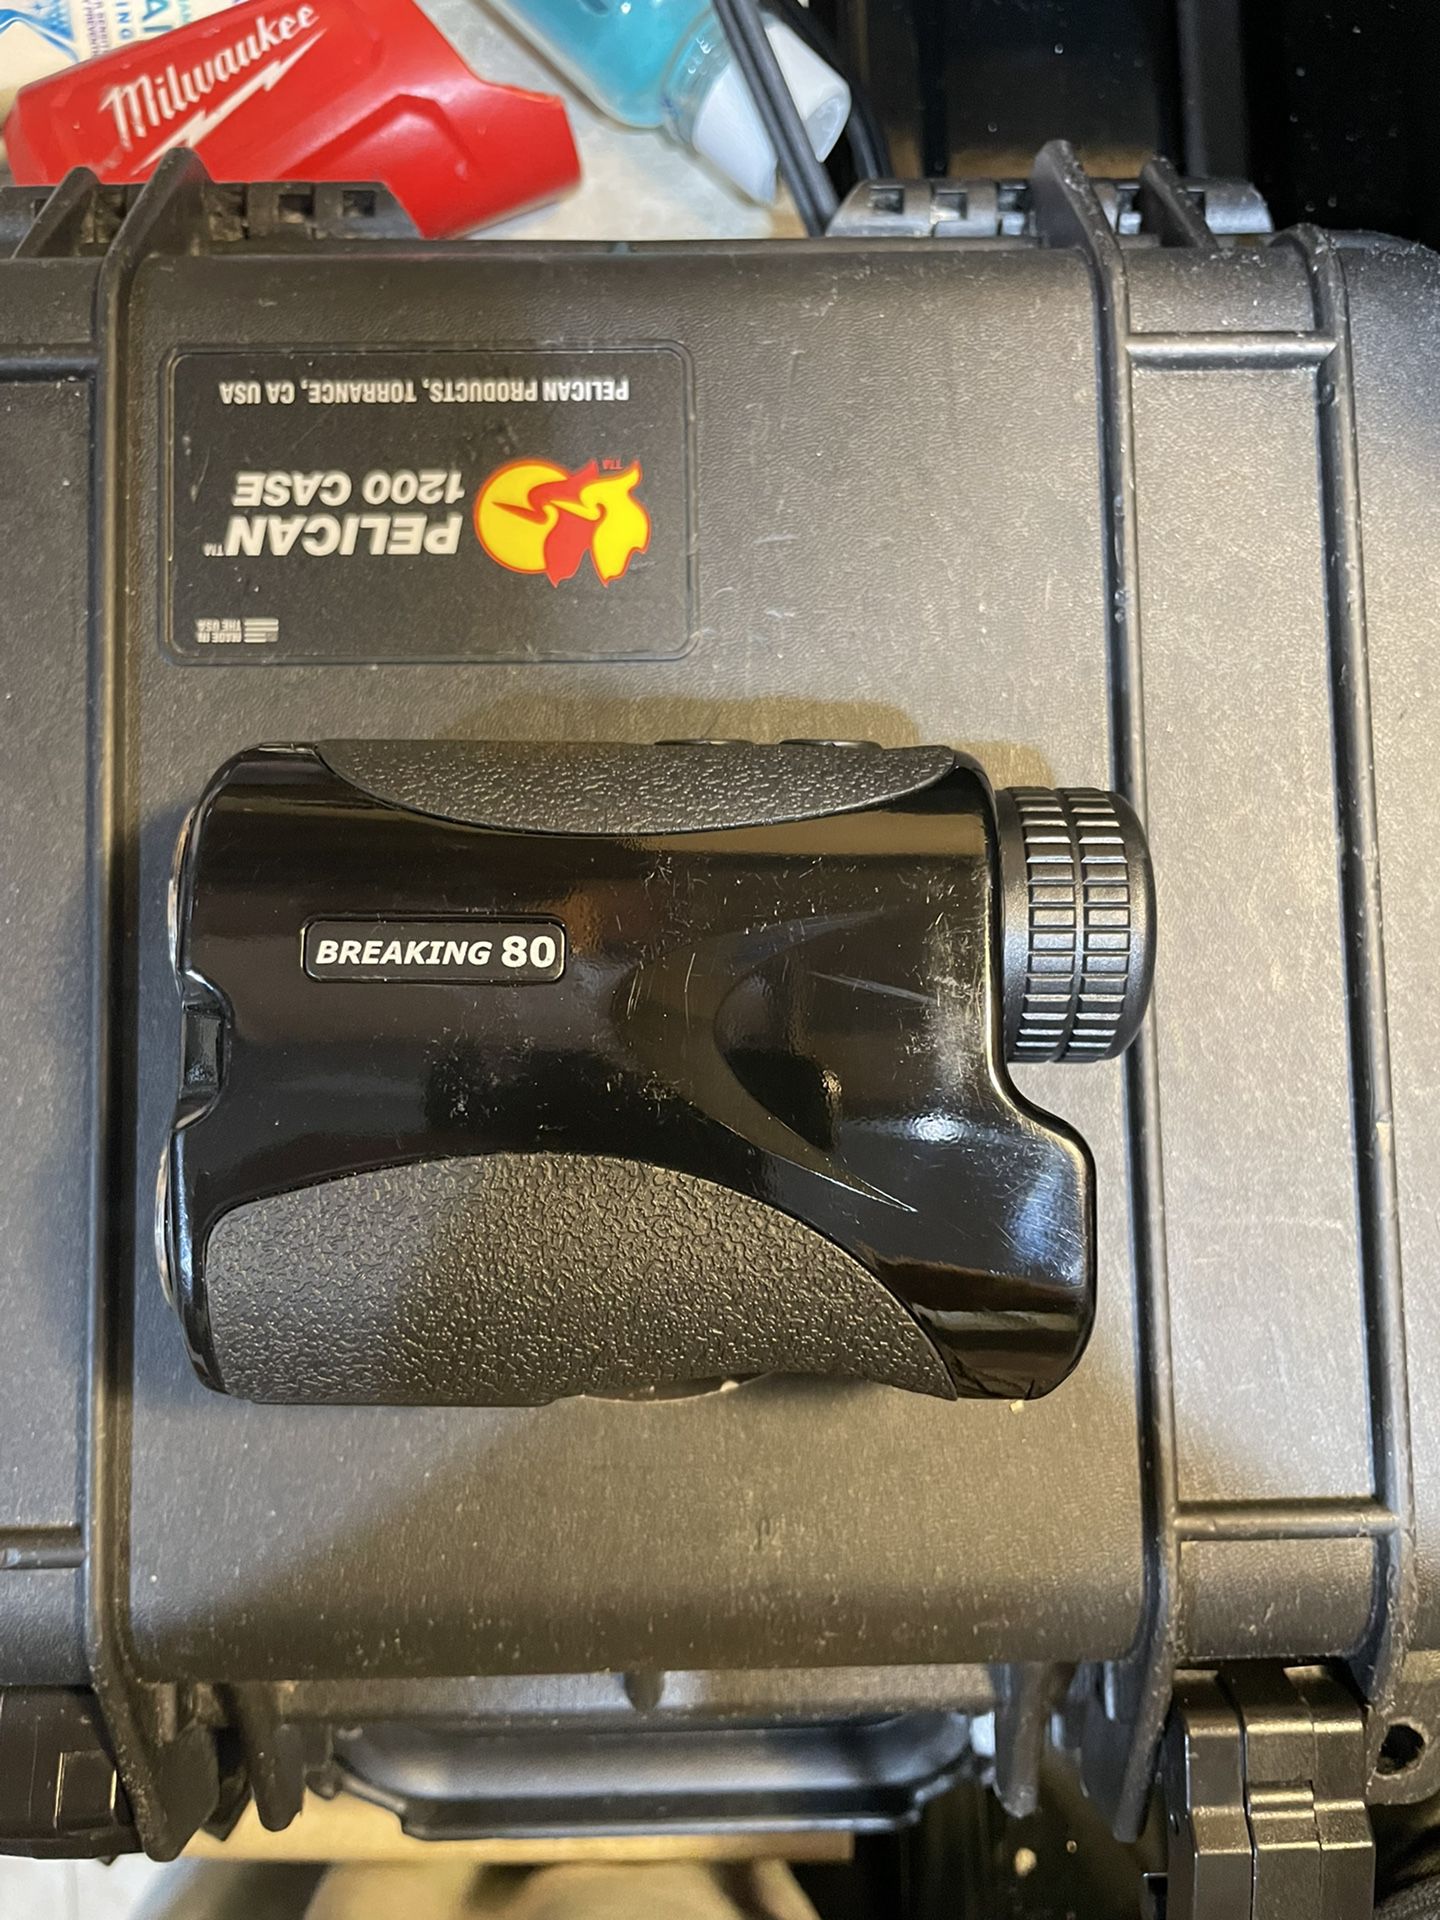 Laser Range Finder “Breaking 80” W Case 